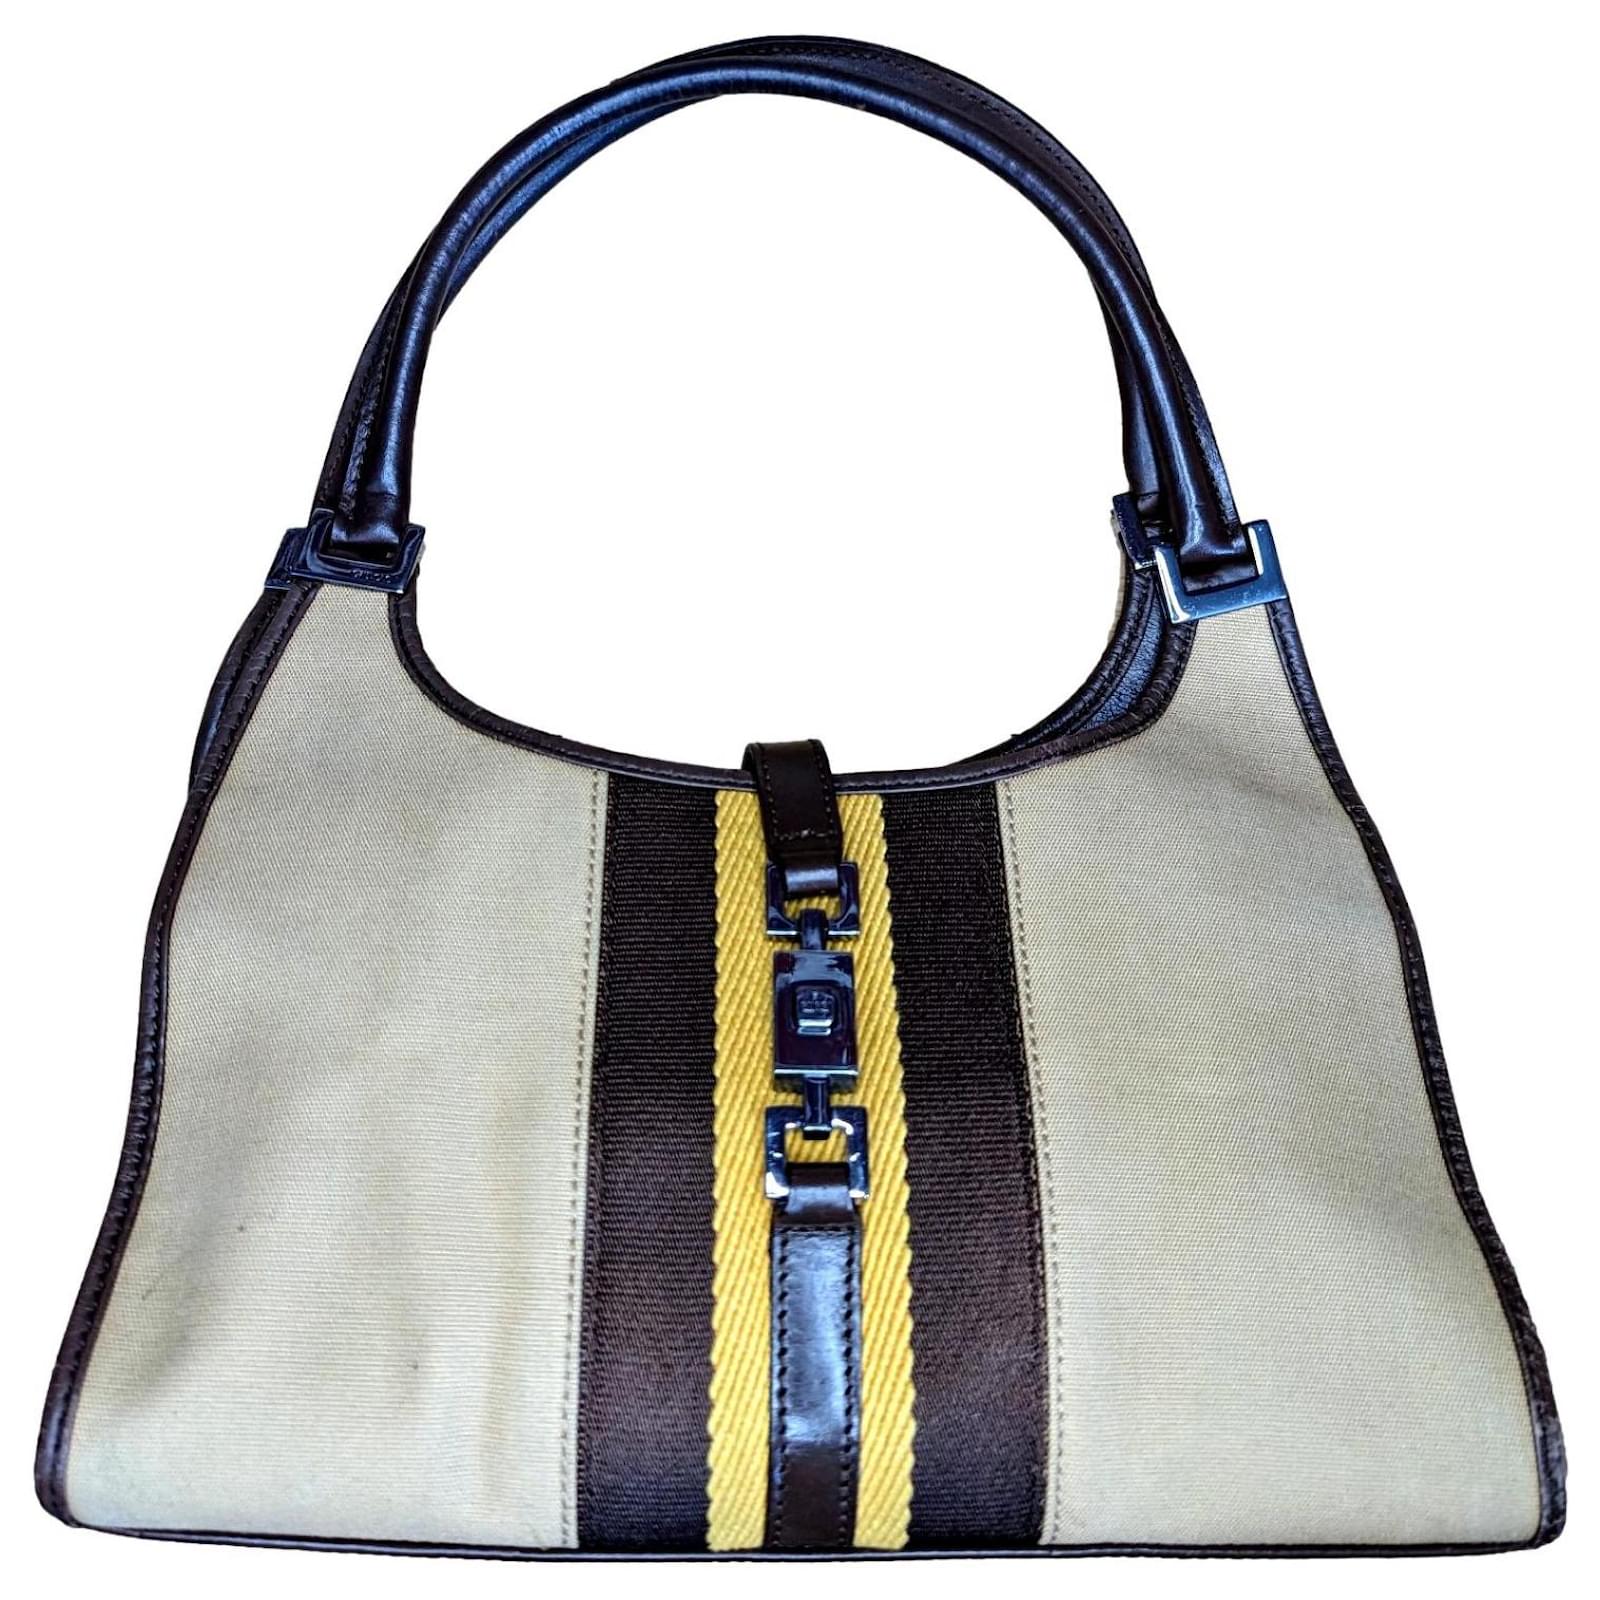 Gucci Beige Vintage Handbags